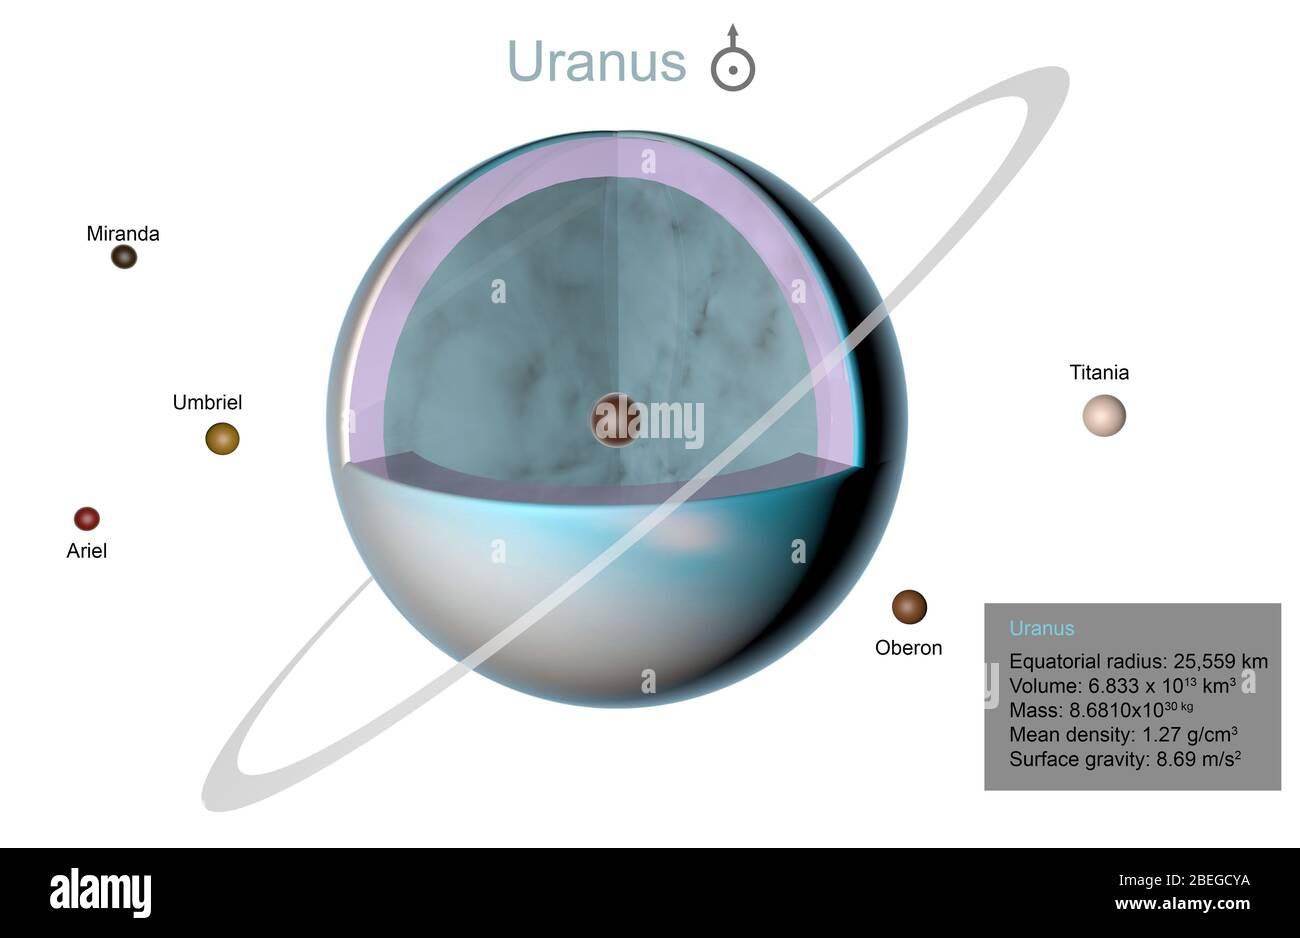 Illustrazione di Urano in spaccato, rivelandone la struttura. Sono inoltre mostrati i cinque satelliti principali del pianeta: Miranda, Umbriel, Ariel, Titania e Oberon. Foto Stock